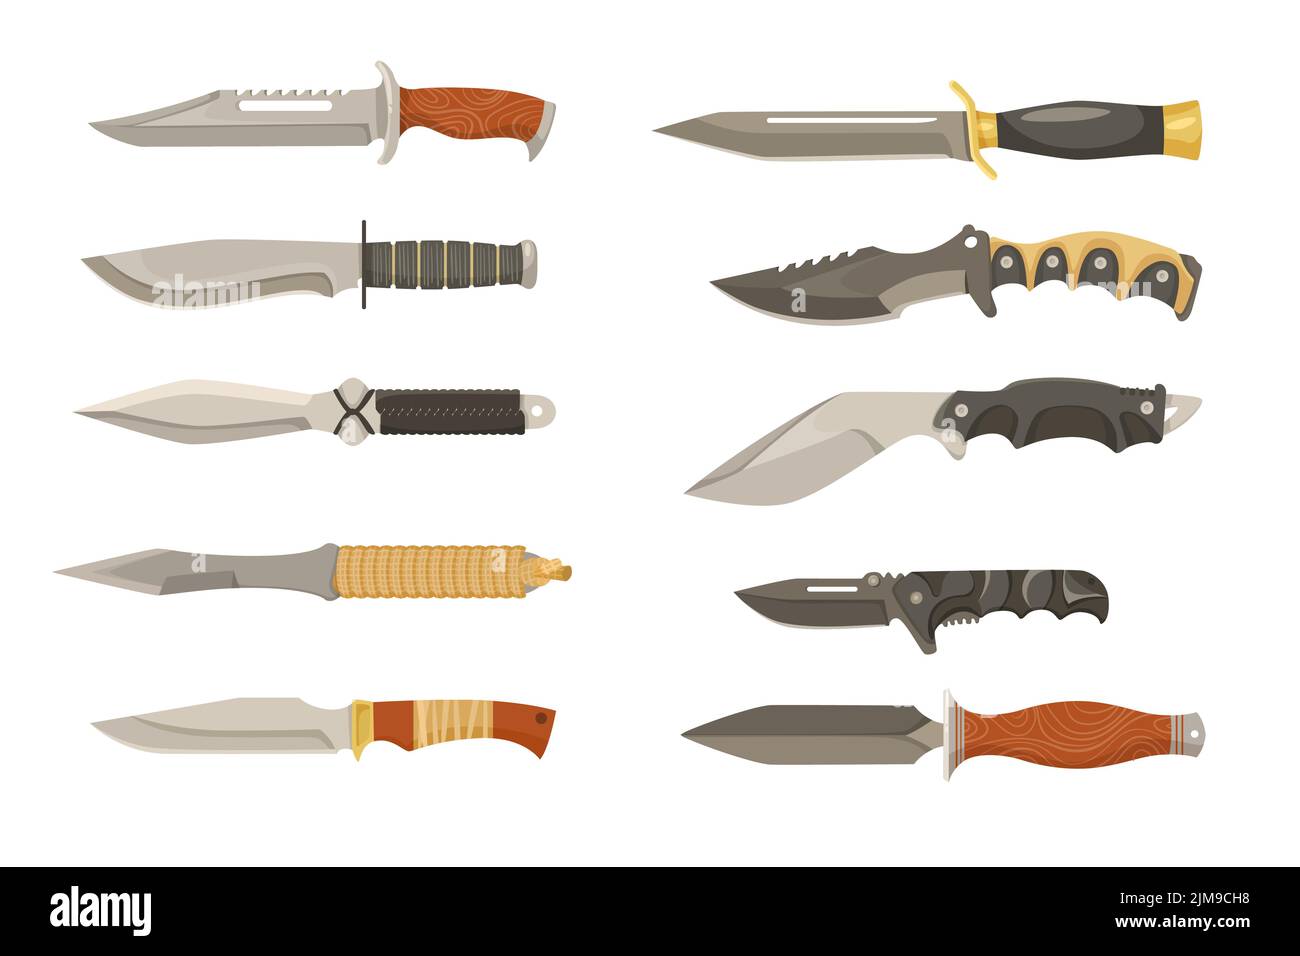 Coloridos cuchillos de combate o dagas juego de ilustraciones de dibujos animados. Hojas de guerrero, cuchillos militares o de caza, espadas de acero, machete inoxidable o navaja Ilustración del Vector